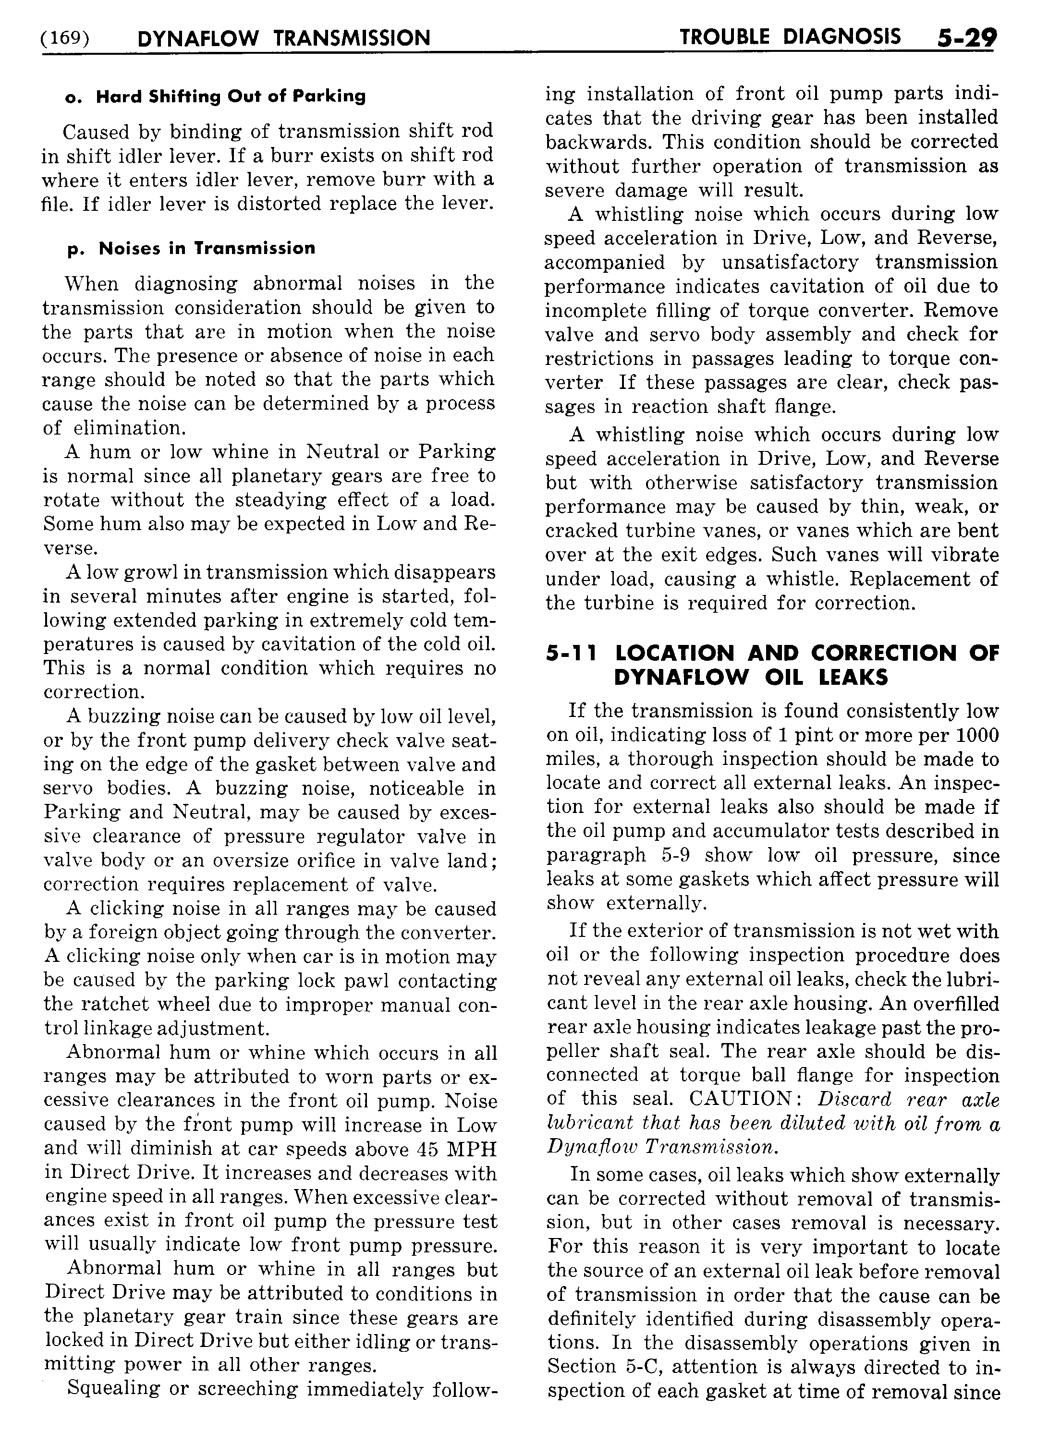 n_06 1955 Buick Shop Manual - Dynaflow-029-029.jpg